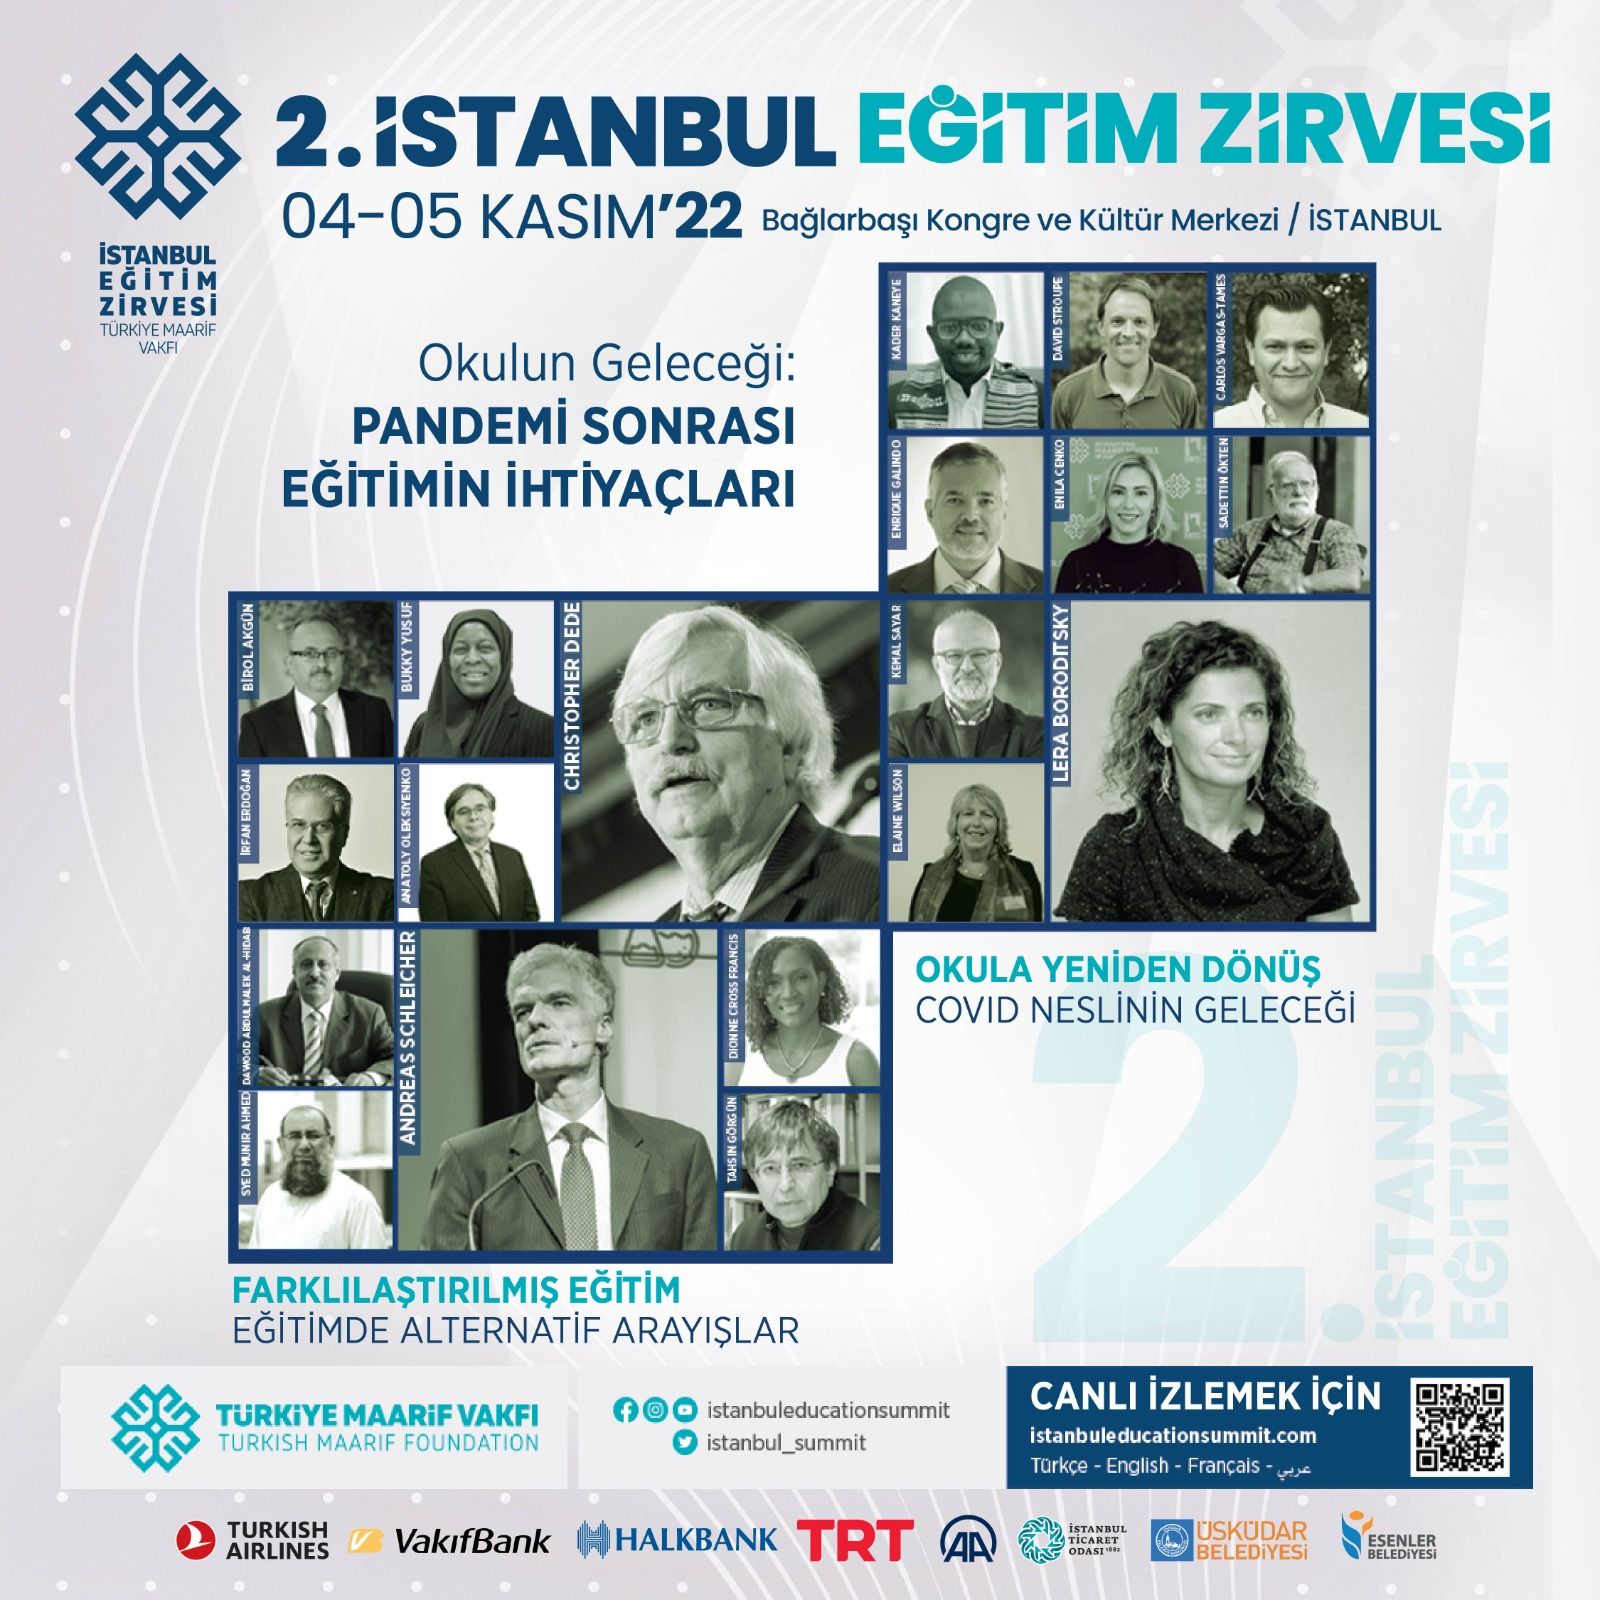 Türkiye Maarif Vakfı Eğitim Otoritelerini 2. İstanbul Eğitim Zirvesi'nde Buluşturacak